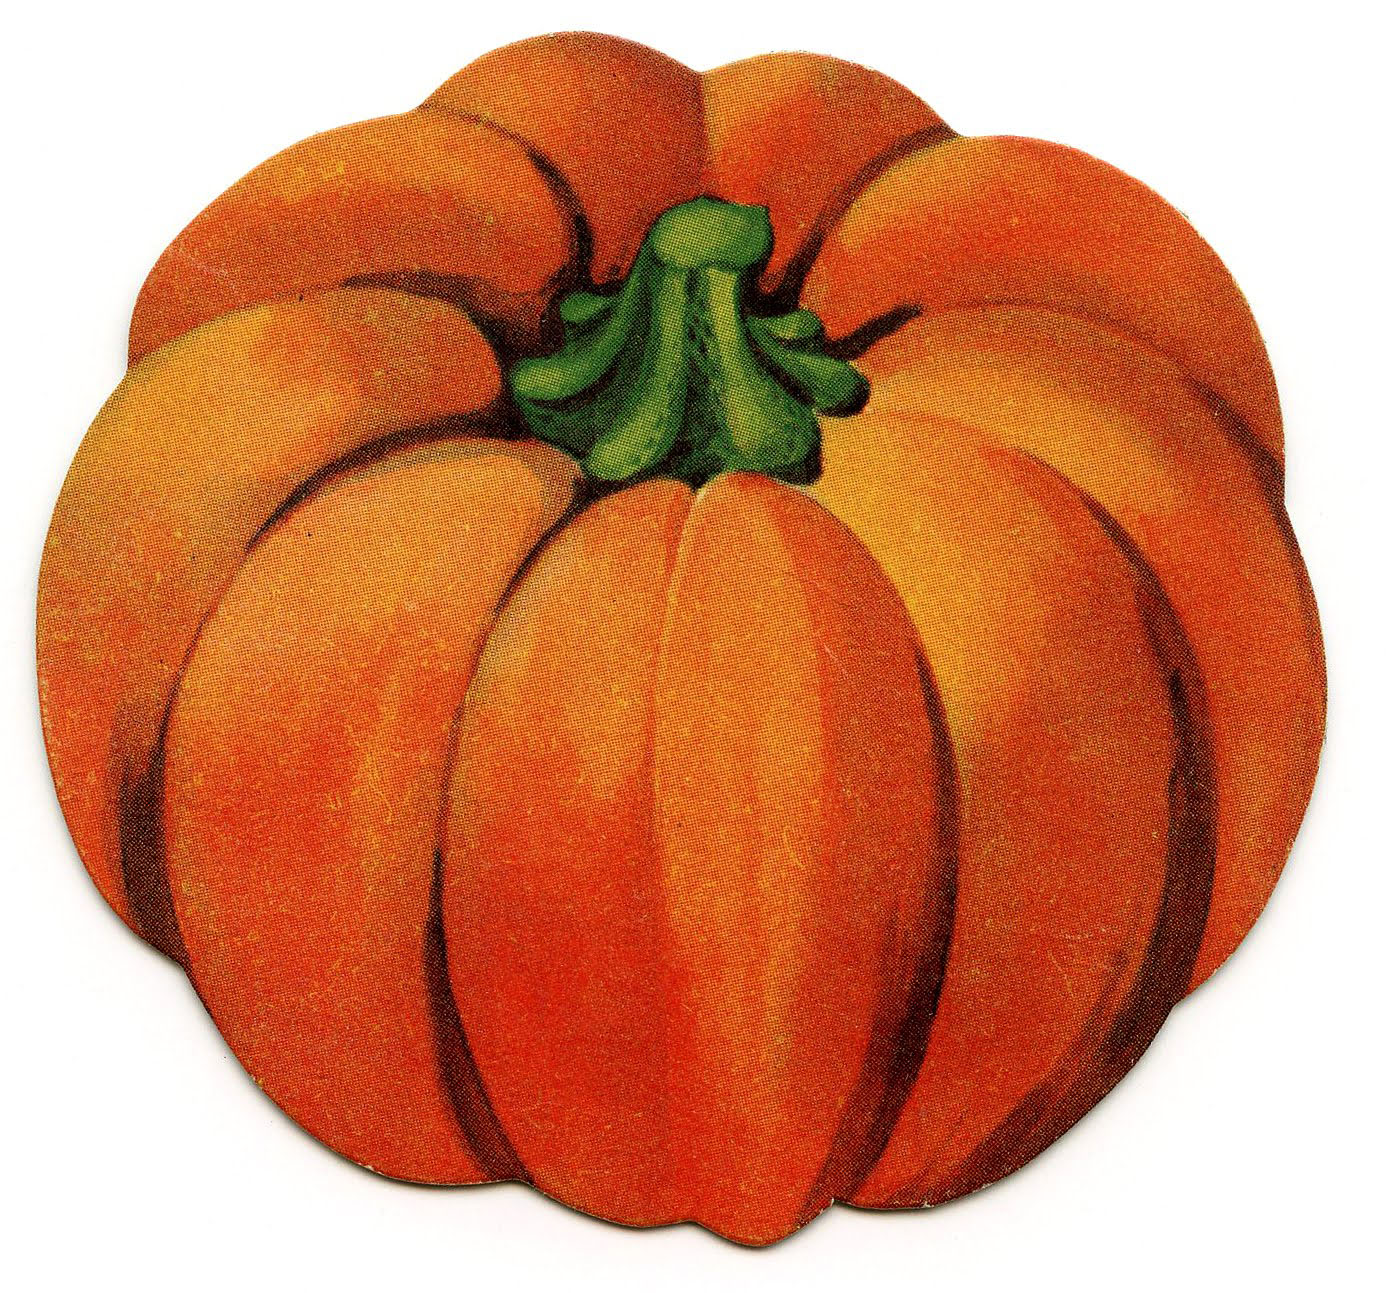 halloween pumpkins clipart